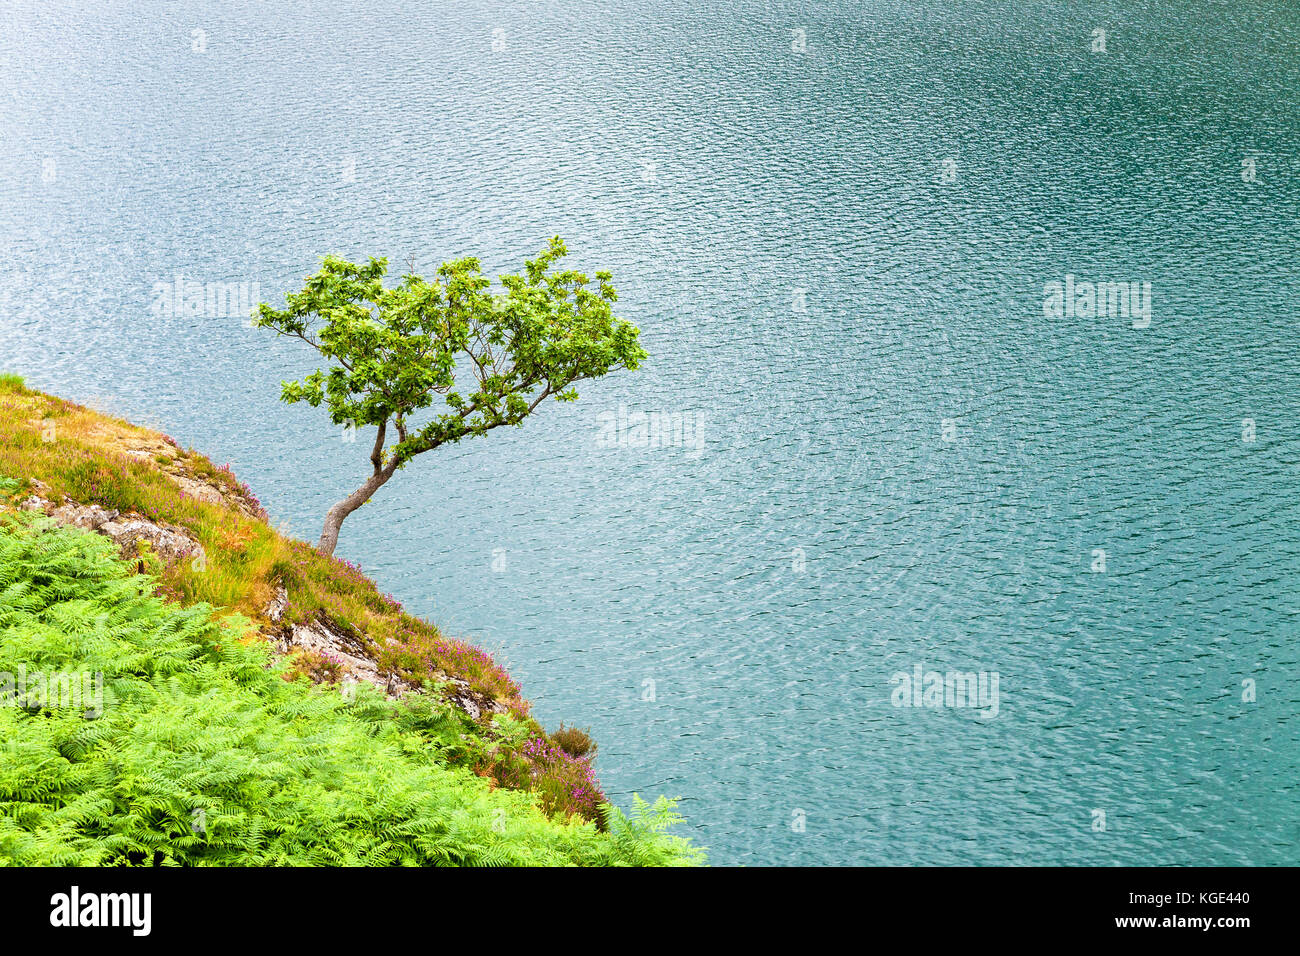 Lonely tree sur le petit rocher sur surface de l'eau du lac de Llyn Peris, Pays de Galles, Grande-Bretagne. Thème nature minimaliste. Banque D'Images